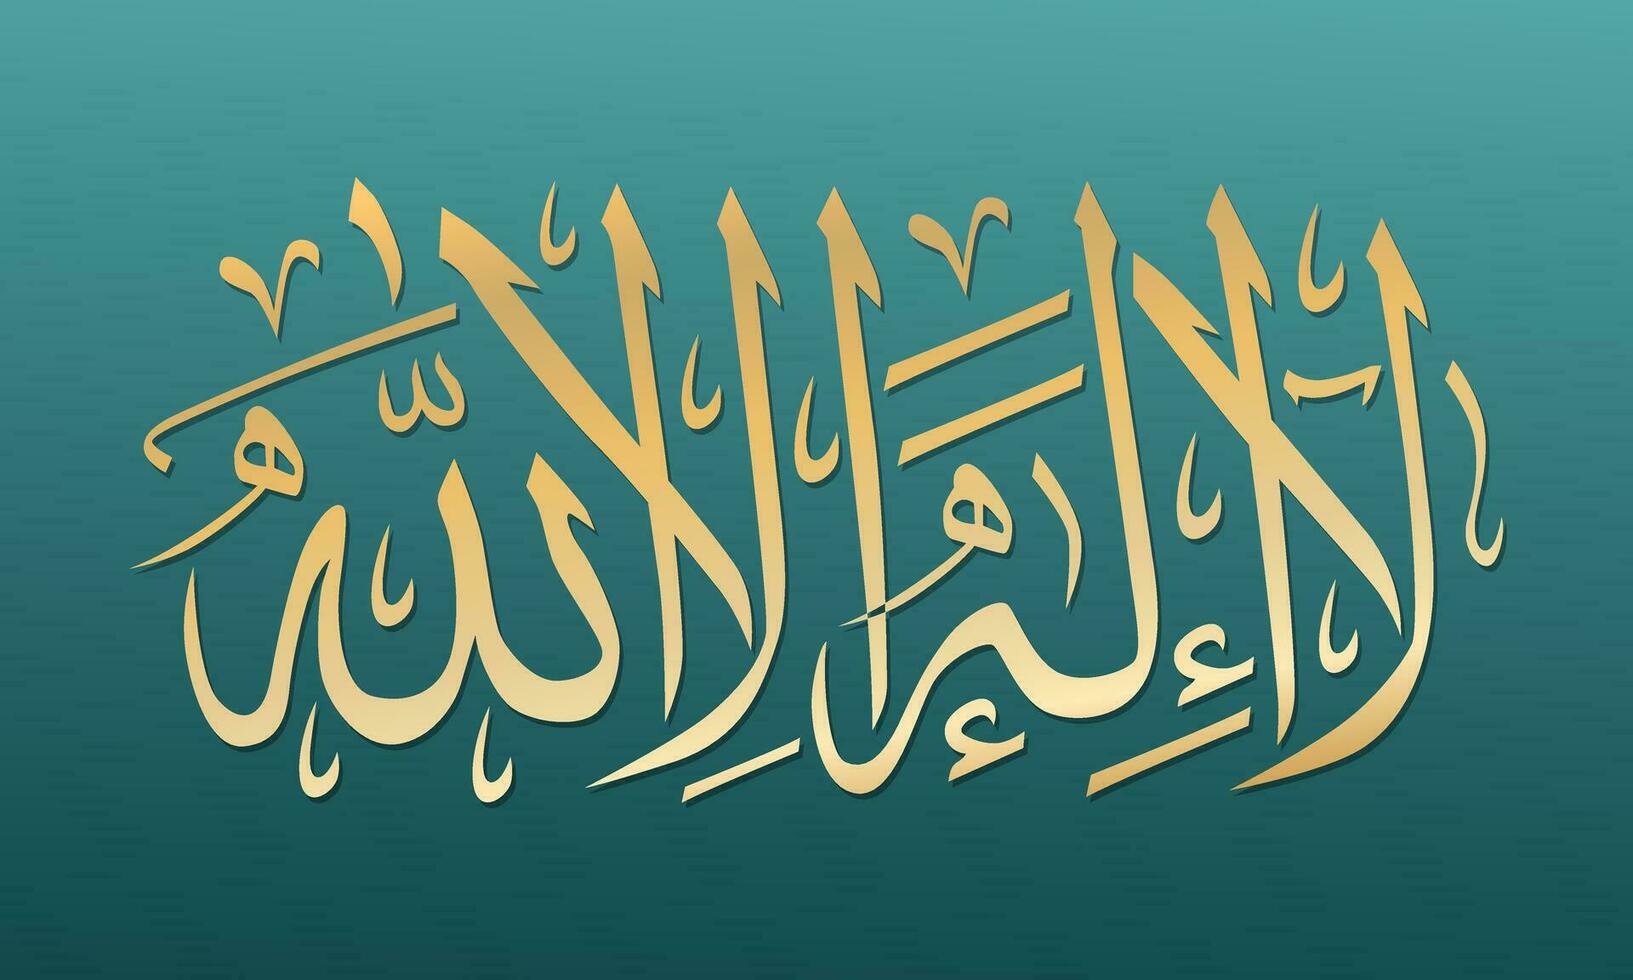 Arabisch Kalligraphie lailahaillallah, welche meint Dort ist Nein Gott aber Allah vektor